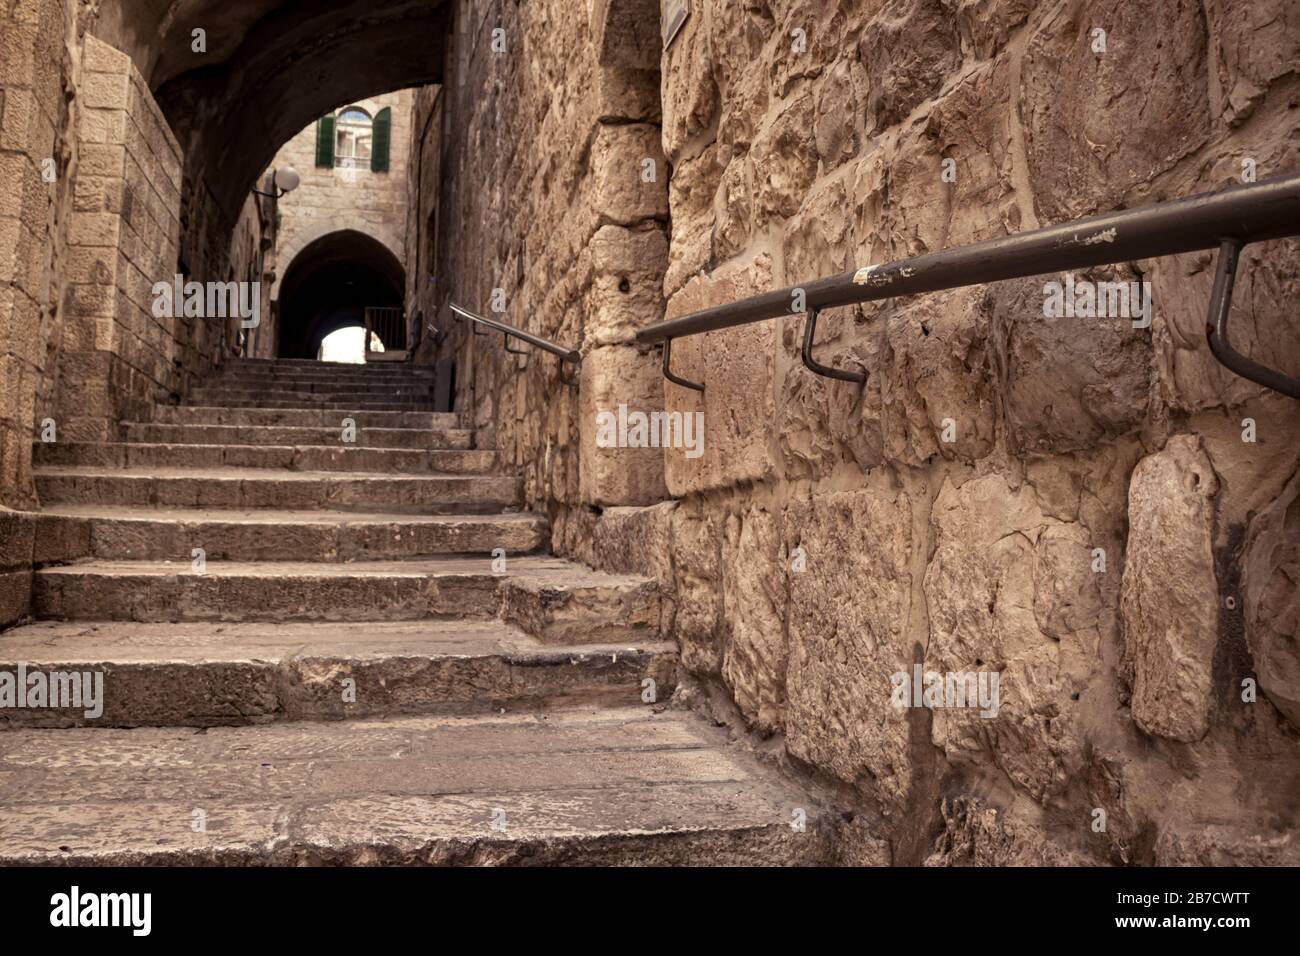 Eine uralte Treppe, in den alten Gassen des jüdischen Viertels, Bögen und Gebäude im alten Stil, ein Metallgeländer für behindertengerechten Zugang. Tageslicht, Jerusalem, Isra Stockfoto